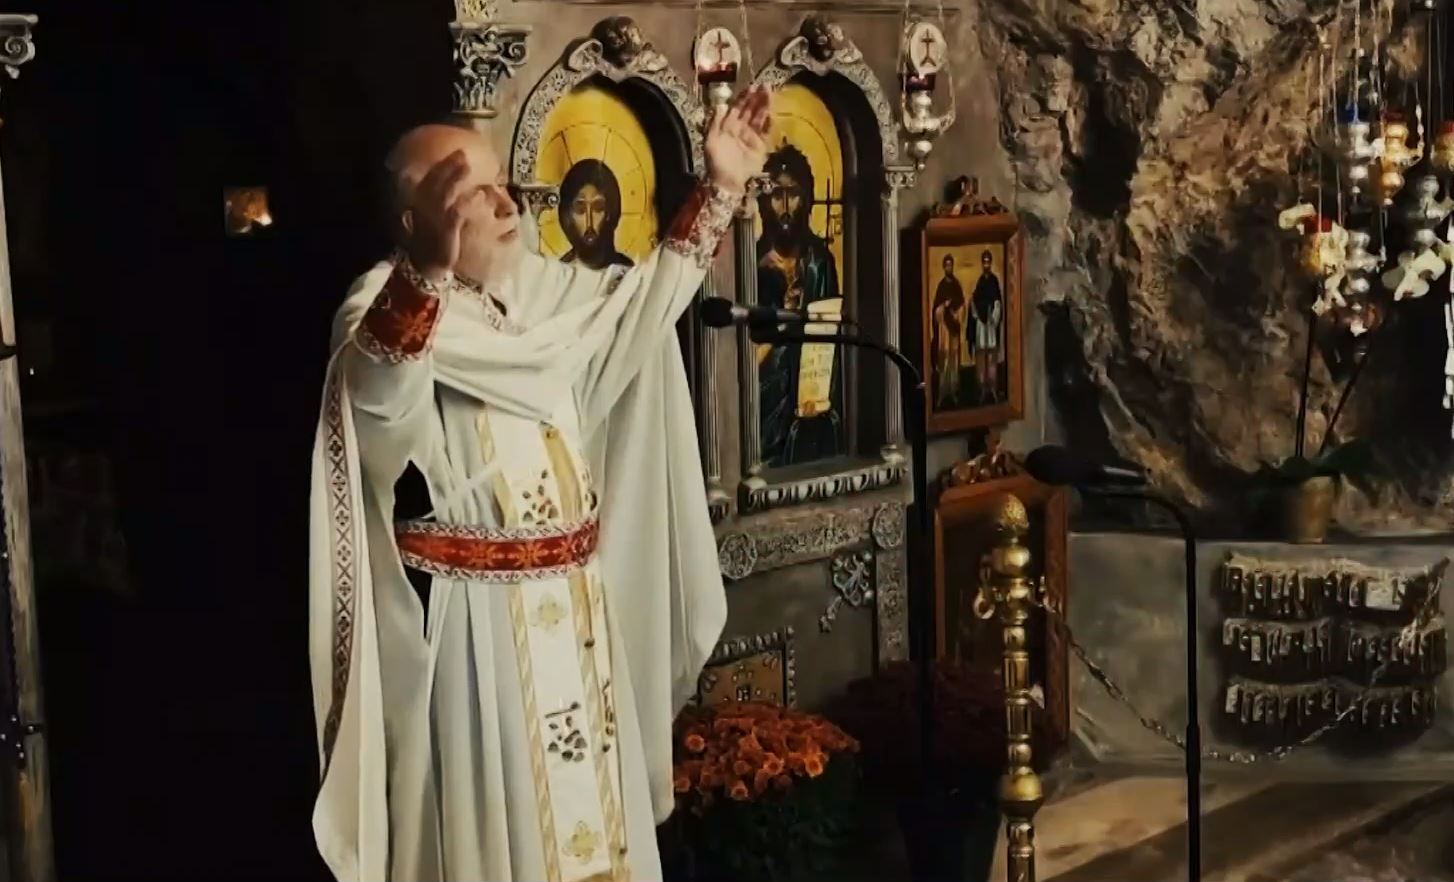 Άγιοι Ισίδωροι: Επέστρεψε ο πατέρας Δημήτριος Λουπασάκης, μαζί με τον «τίμιο» Σταυρό